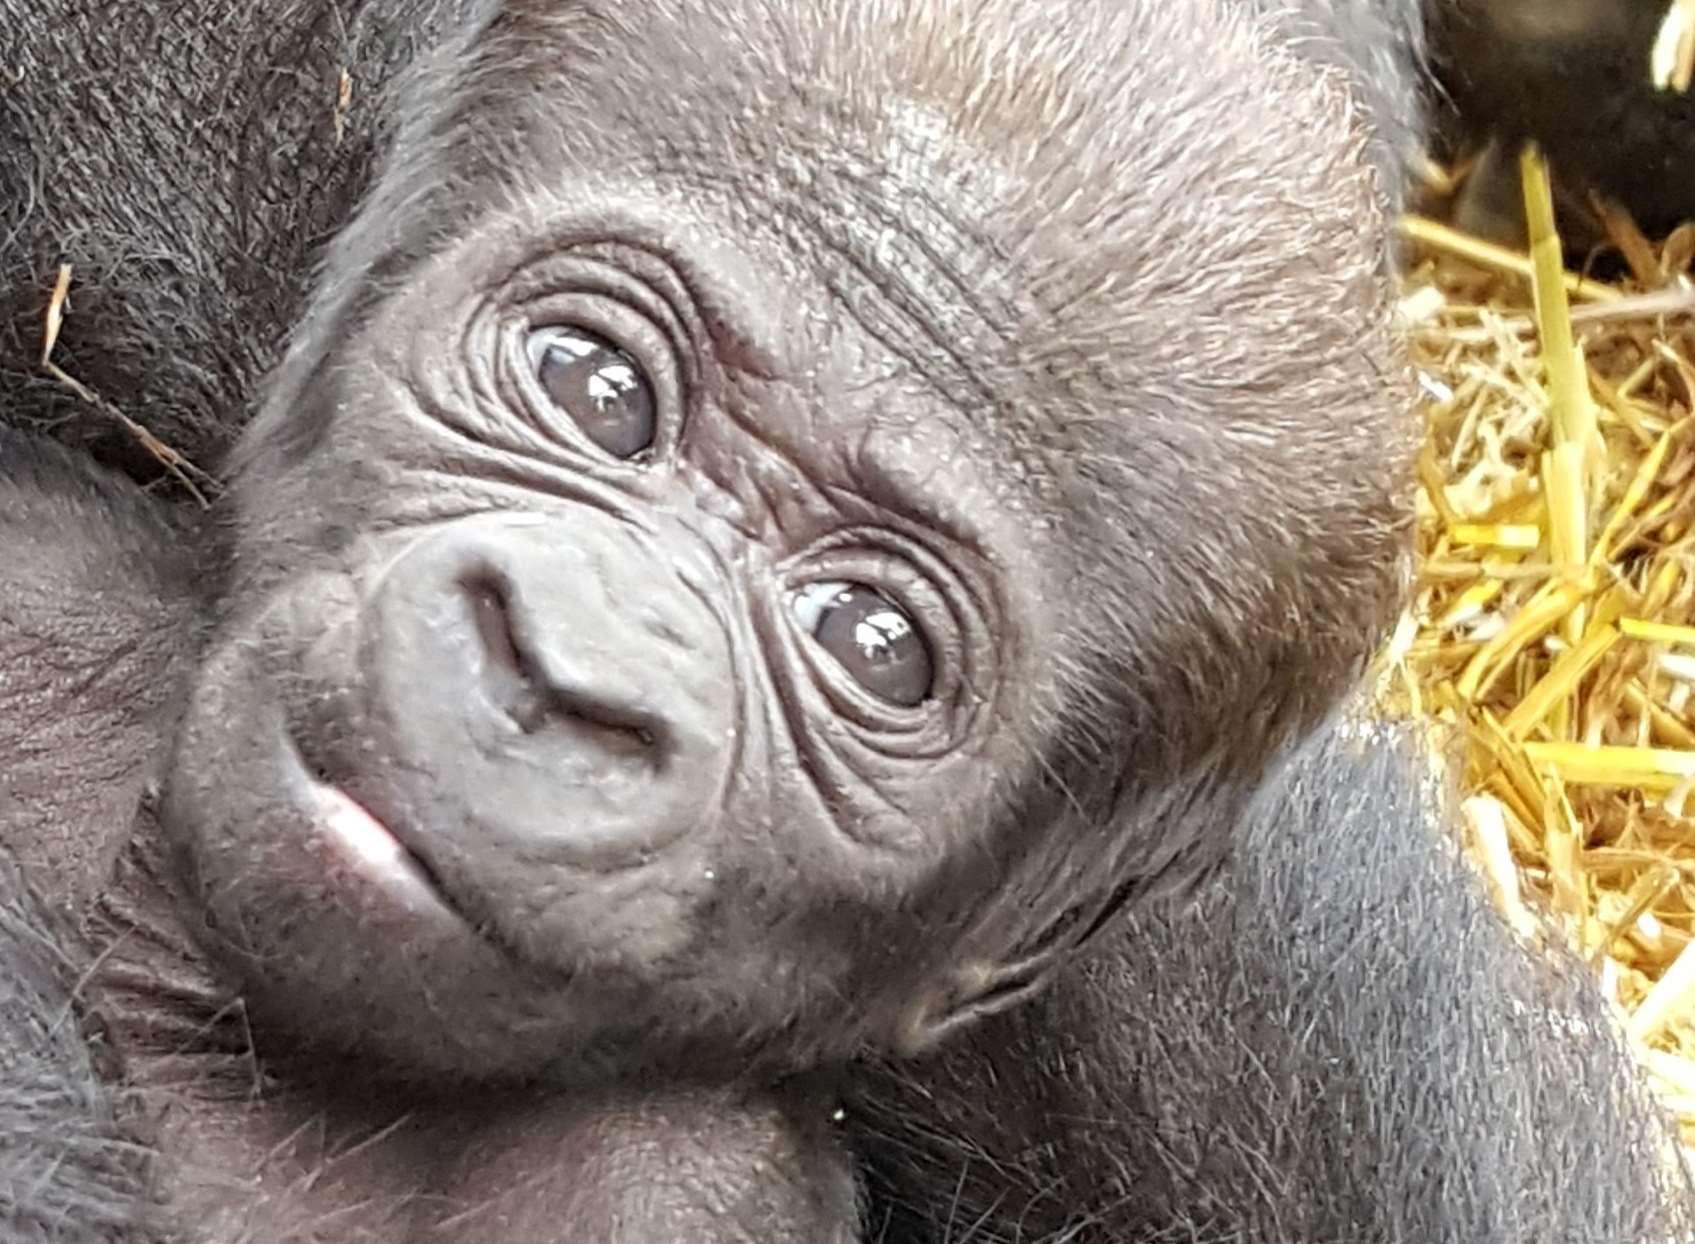 The baby western lowland gorilla